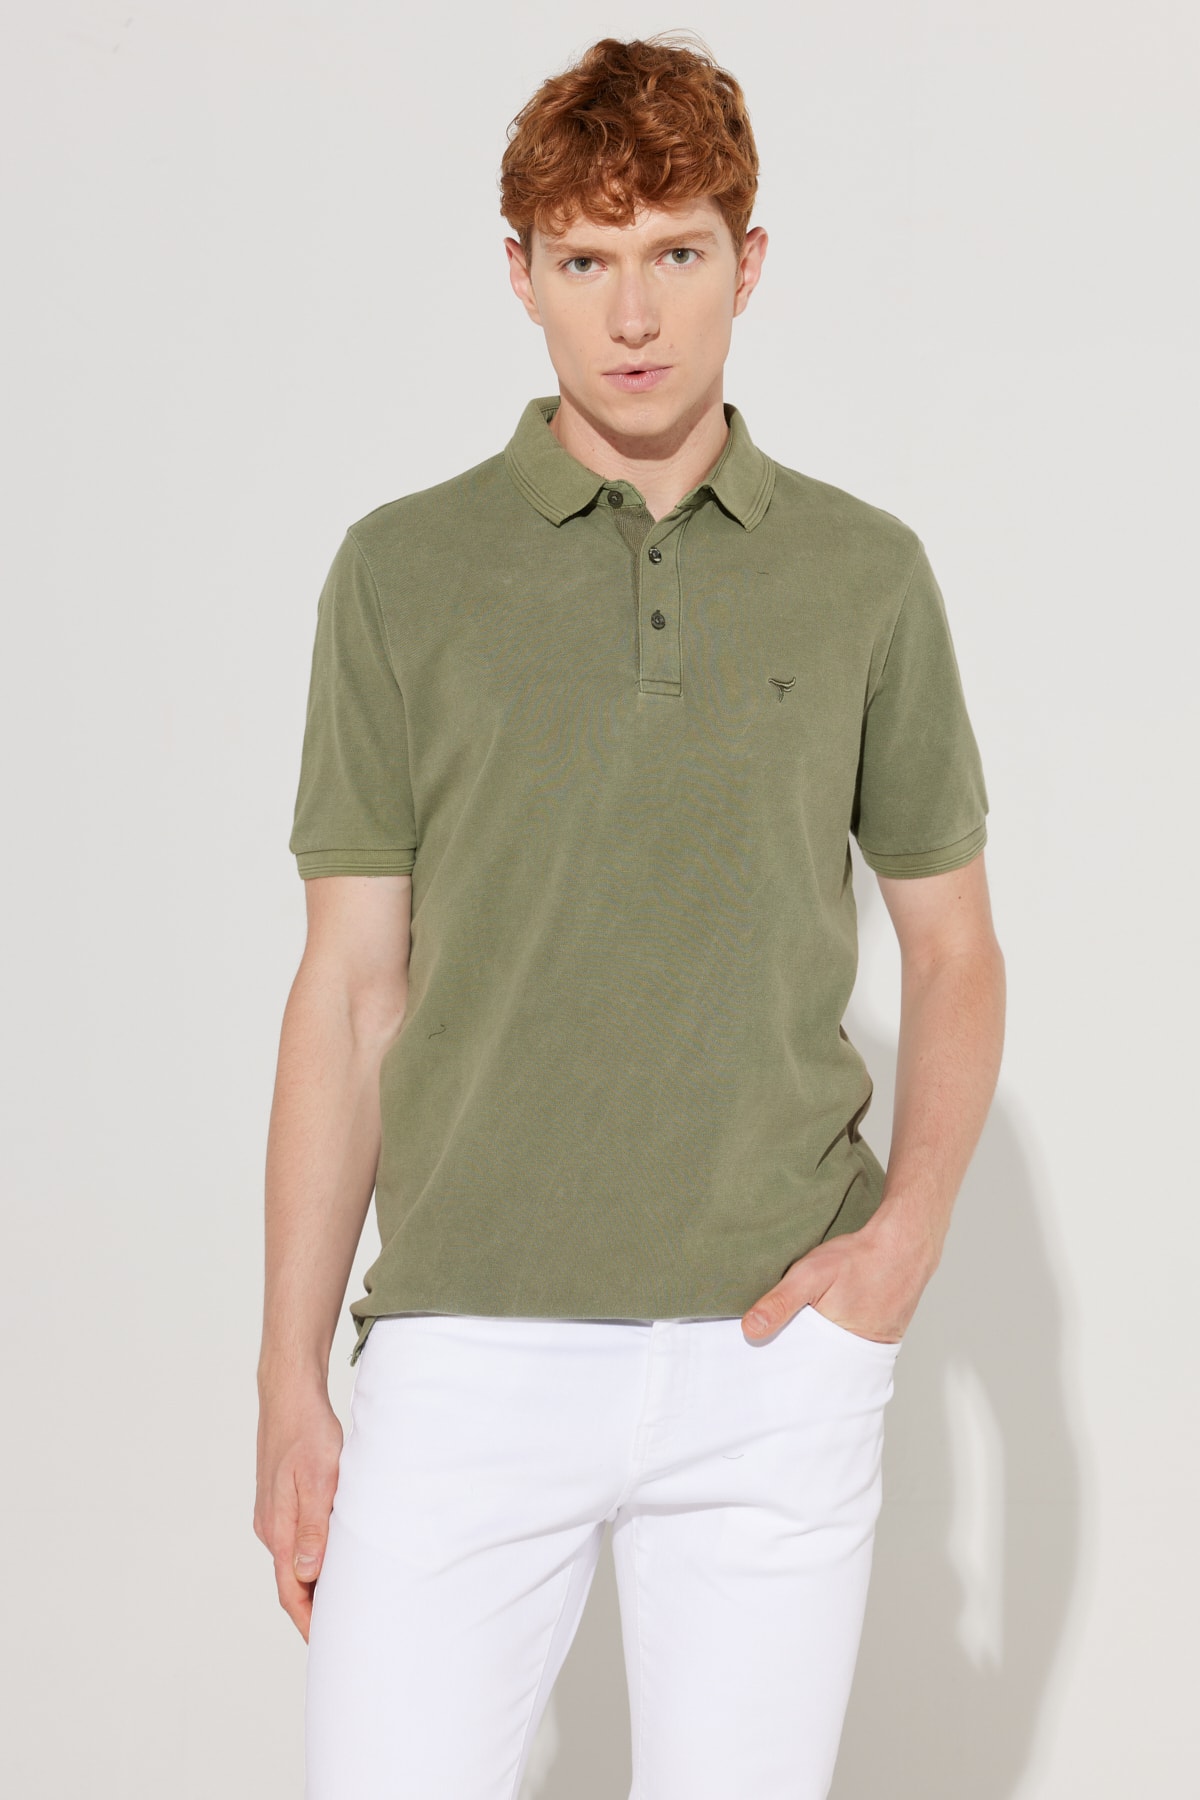 ALTINYILDIZ CLASSICS Мъжка тениска в цвят каки Slim Fit Slim Fit Polo Neck 100% памук къси ръкави с шарени тениска.